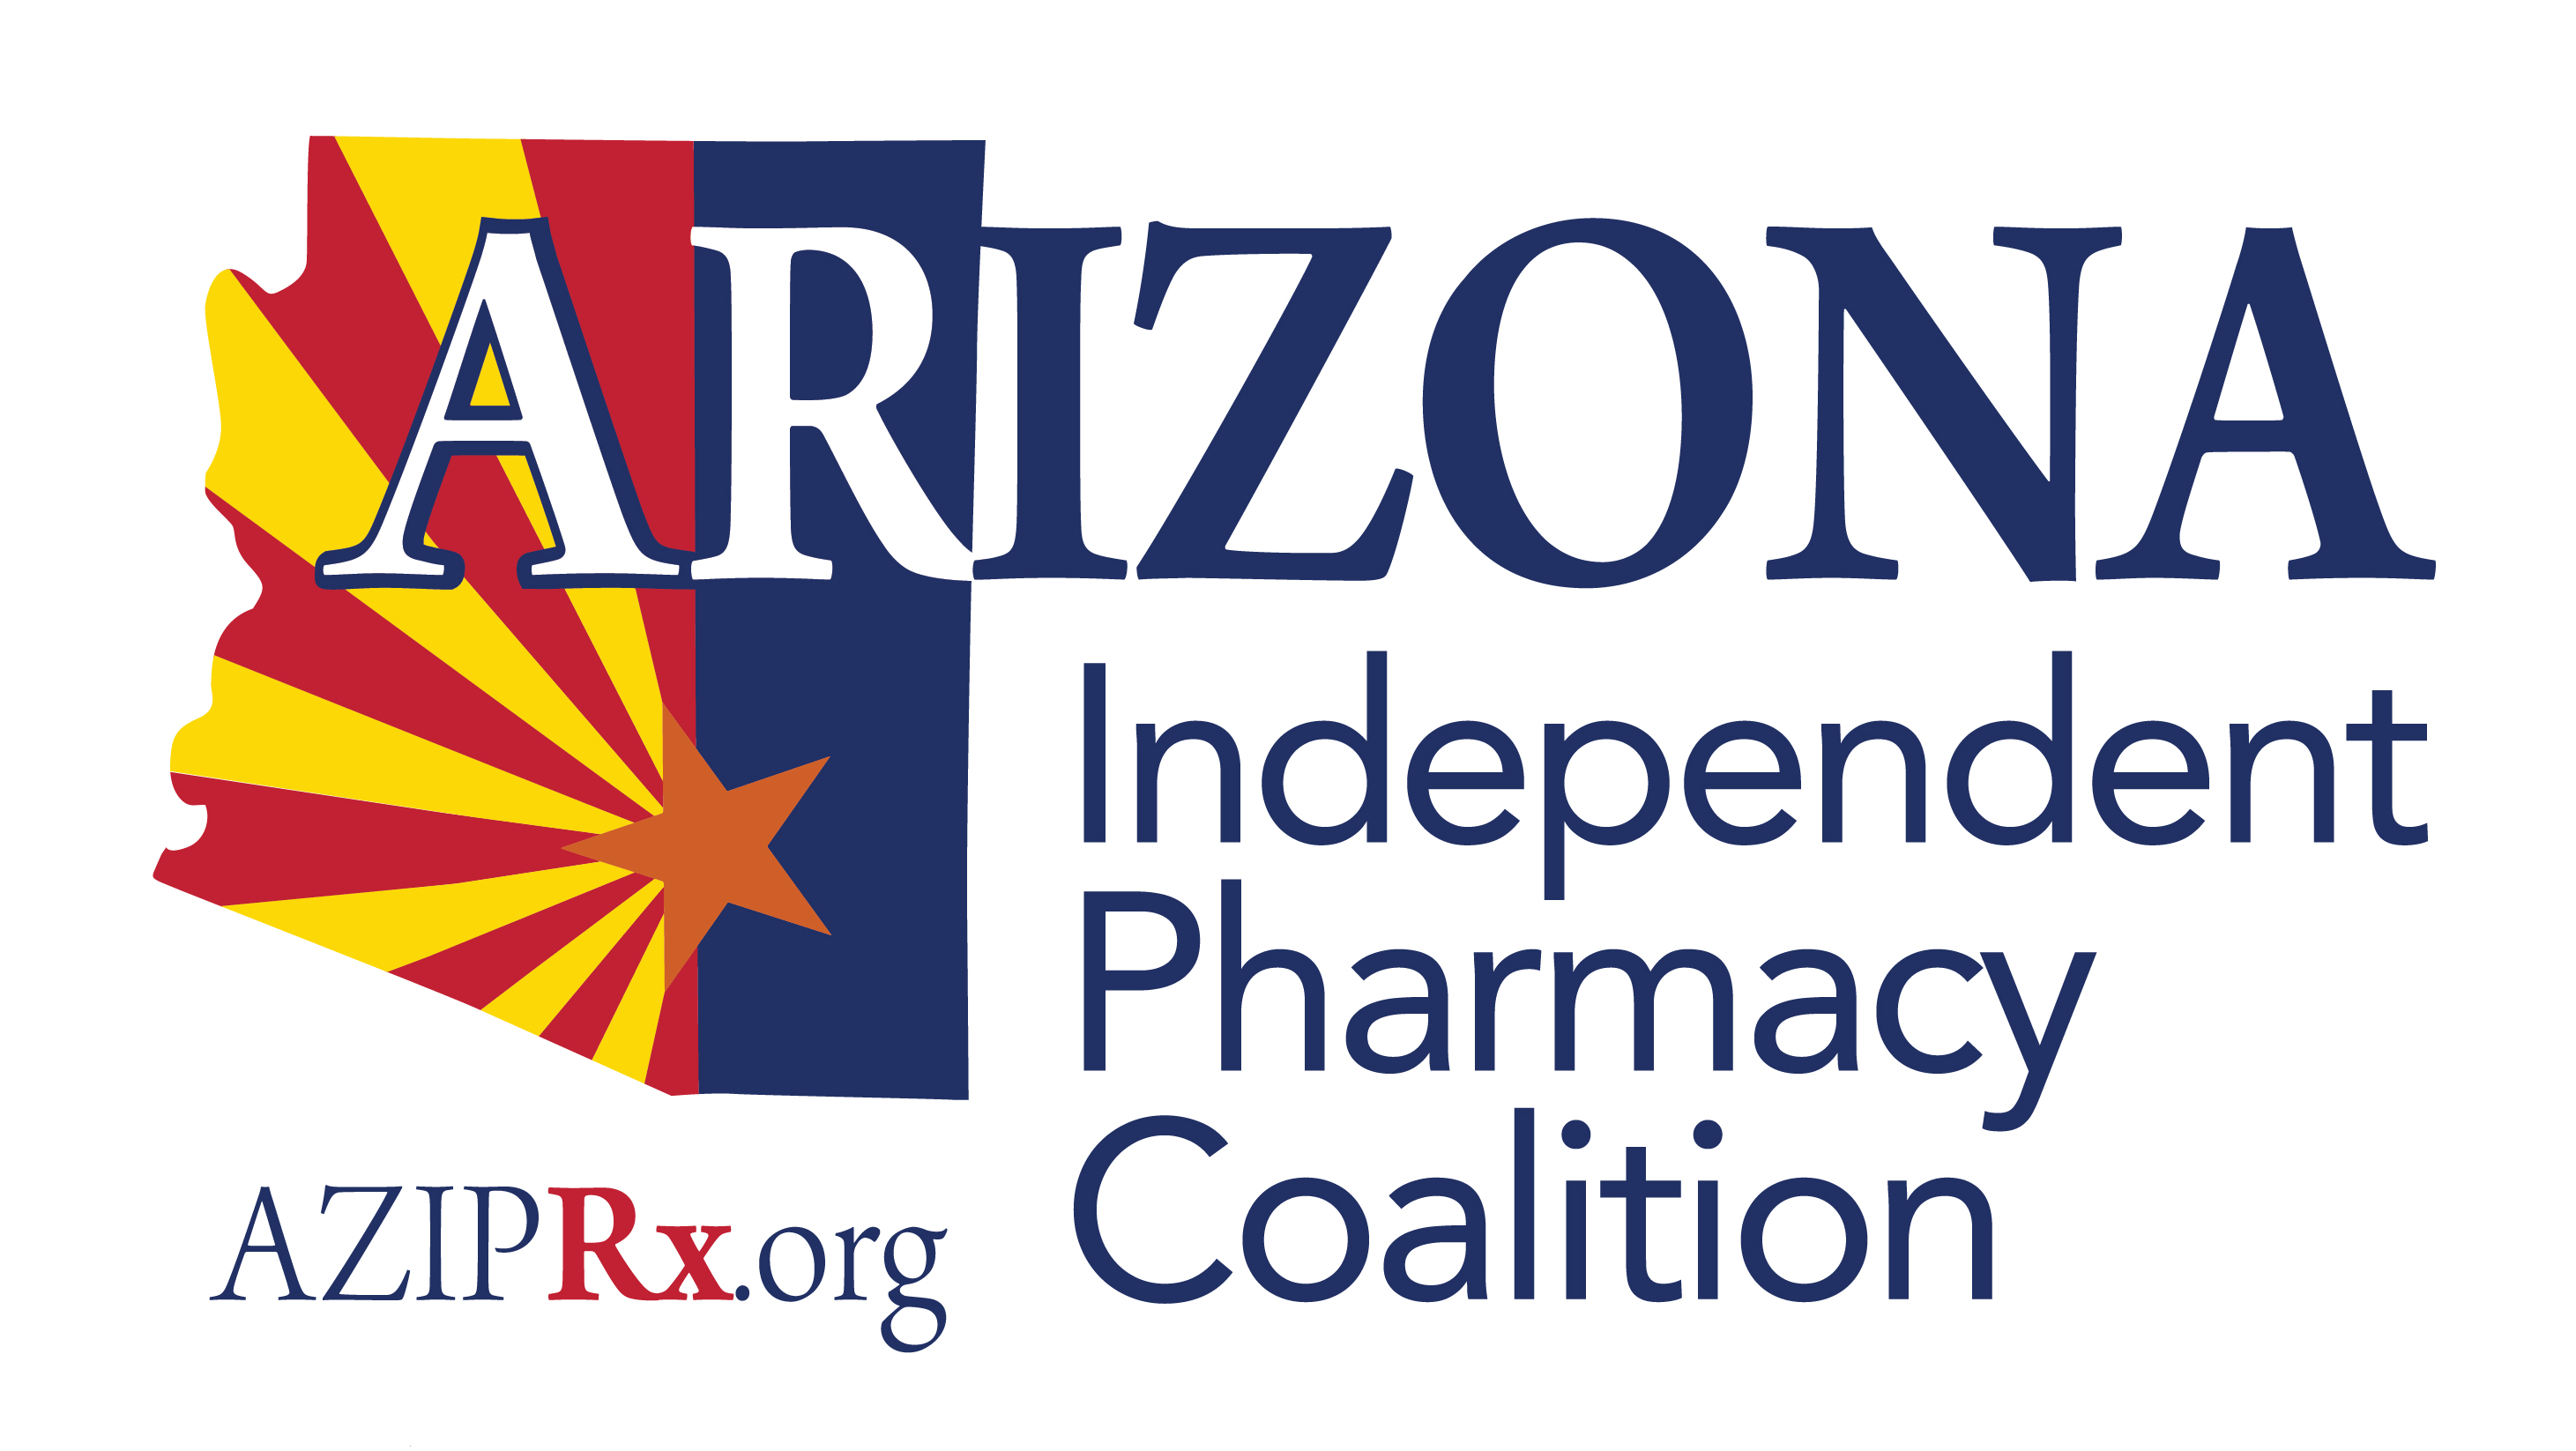 Arizona Independent Pharmacy Coalition logo